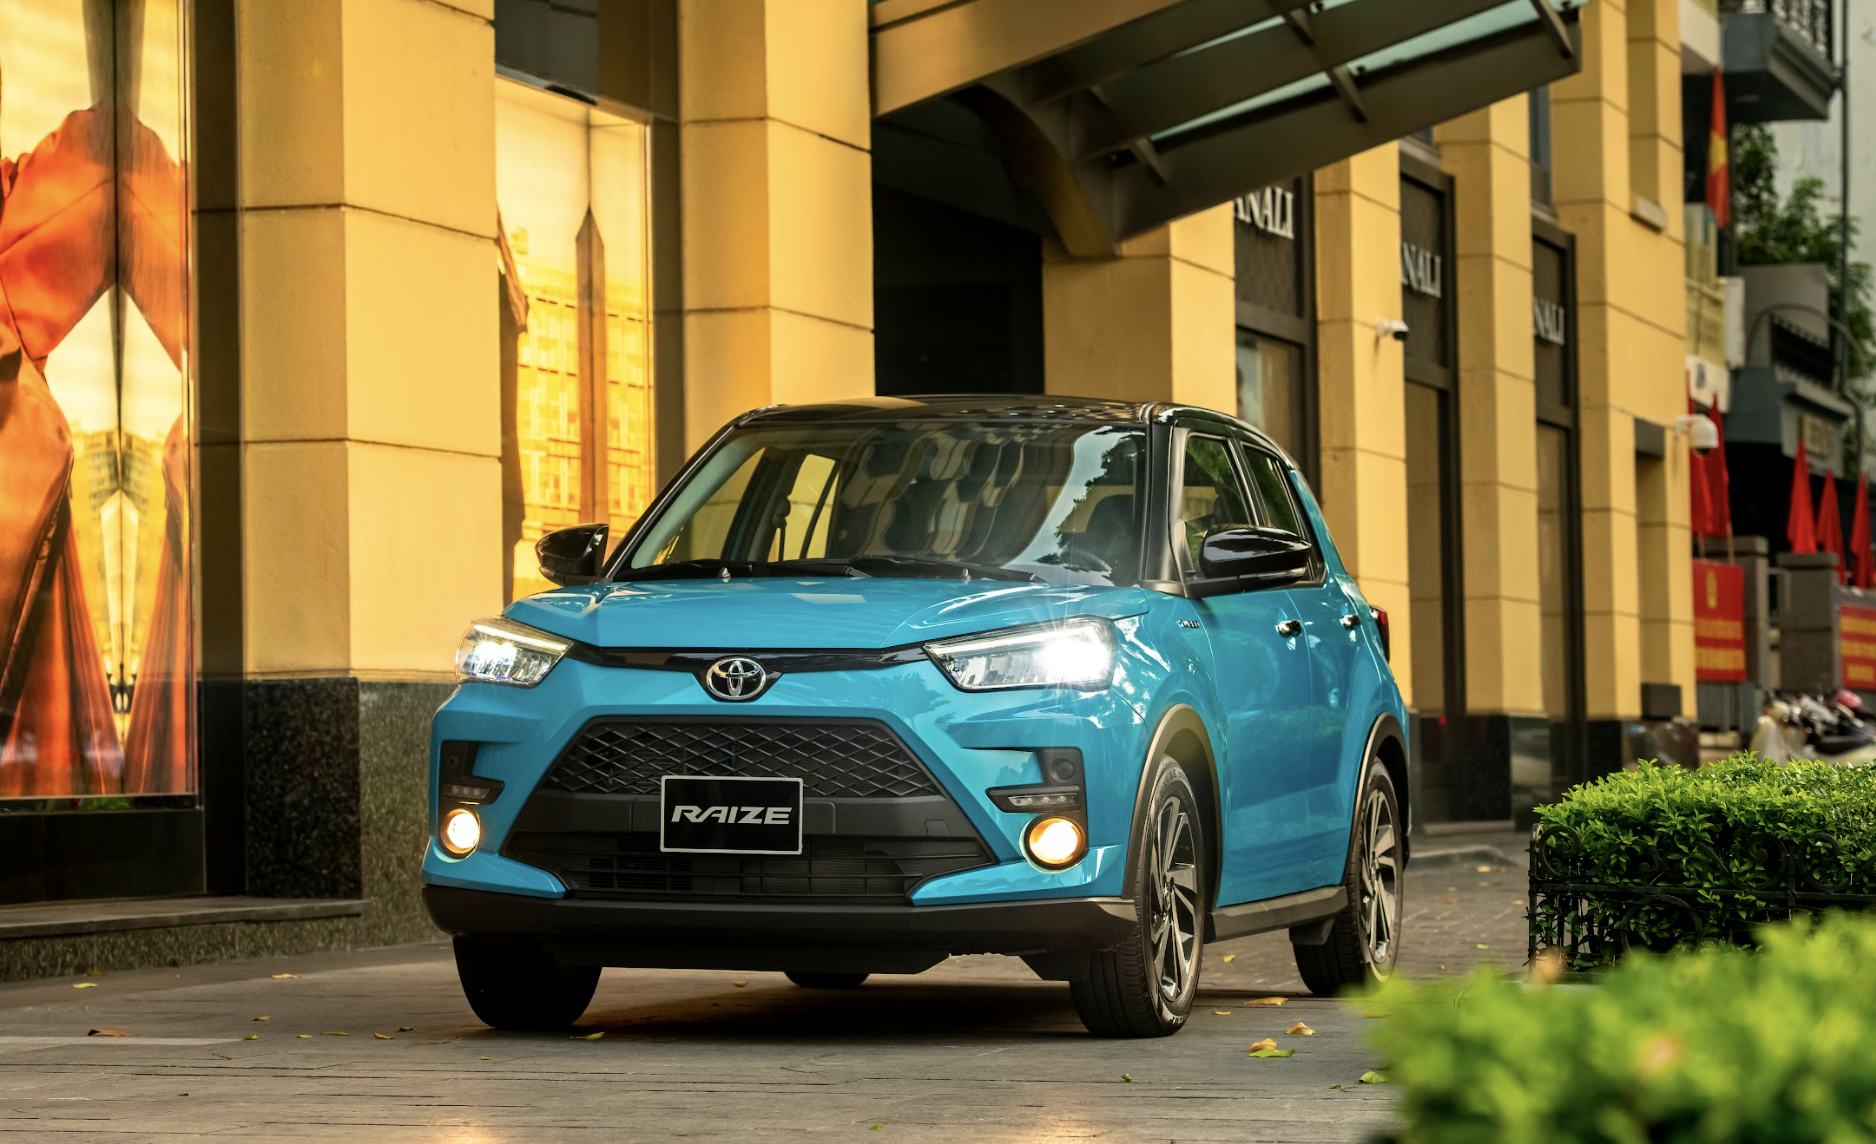 Toyota Việt Nam triệu hồi Toyota Raize vì nguy cơ sập gầm Toyota Raize chốt giá từ 527 triệu đồng tại Việt Nam raize.png